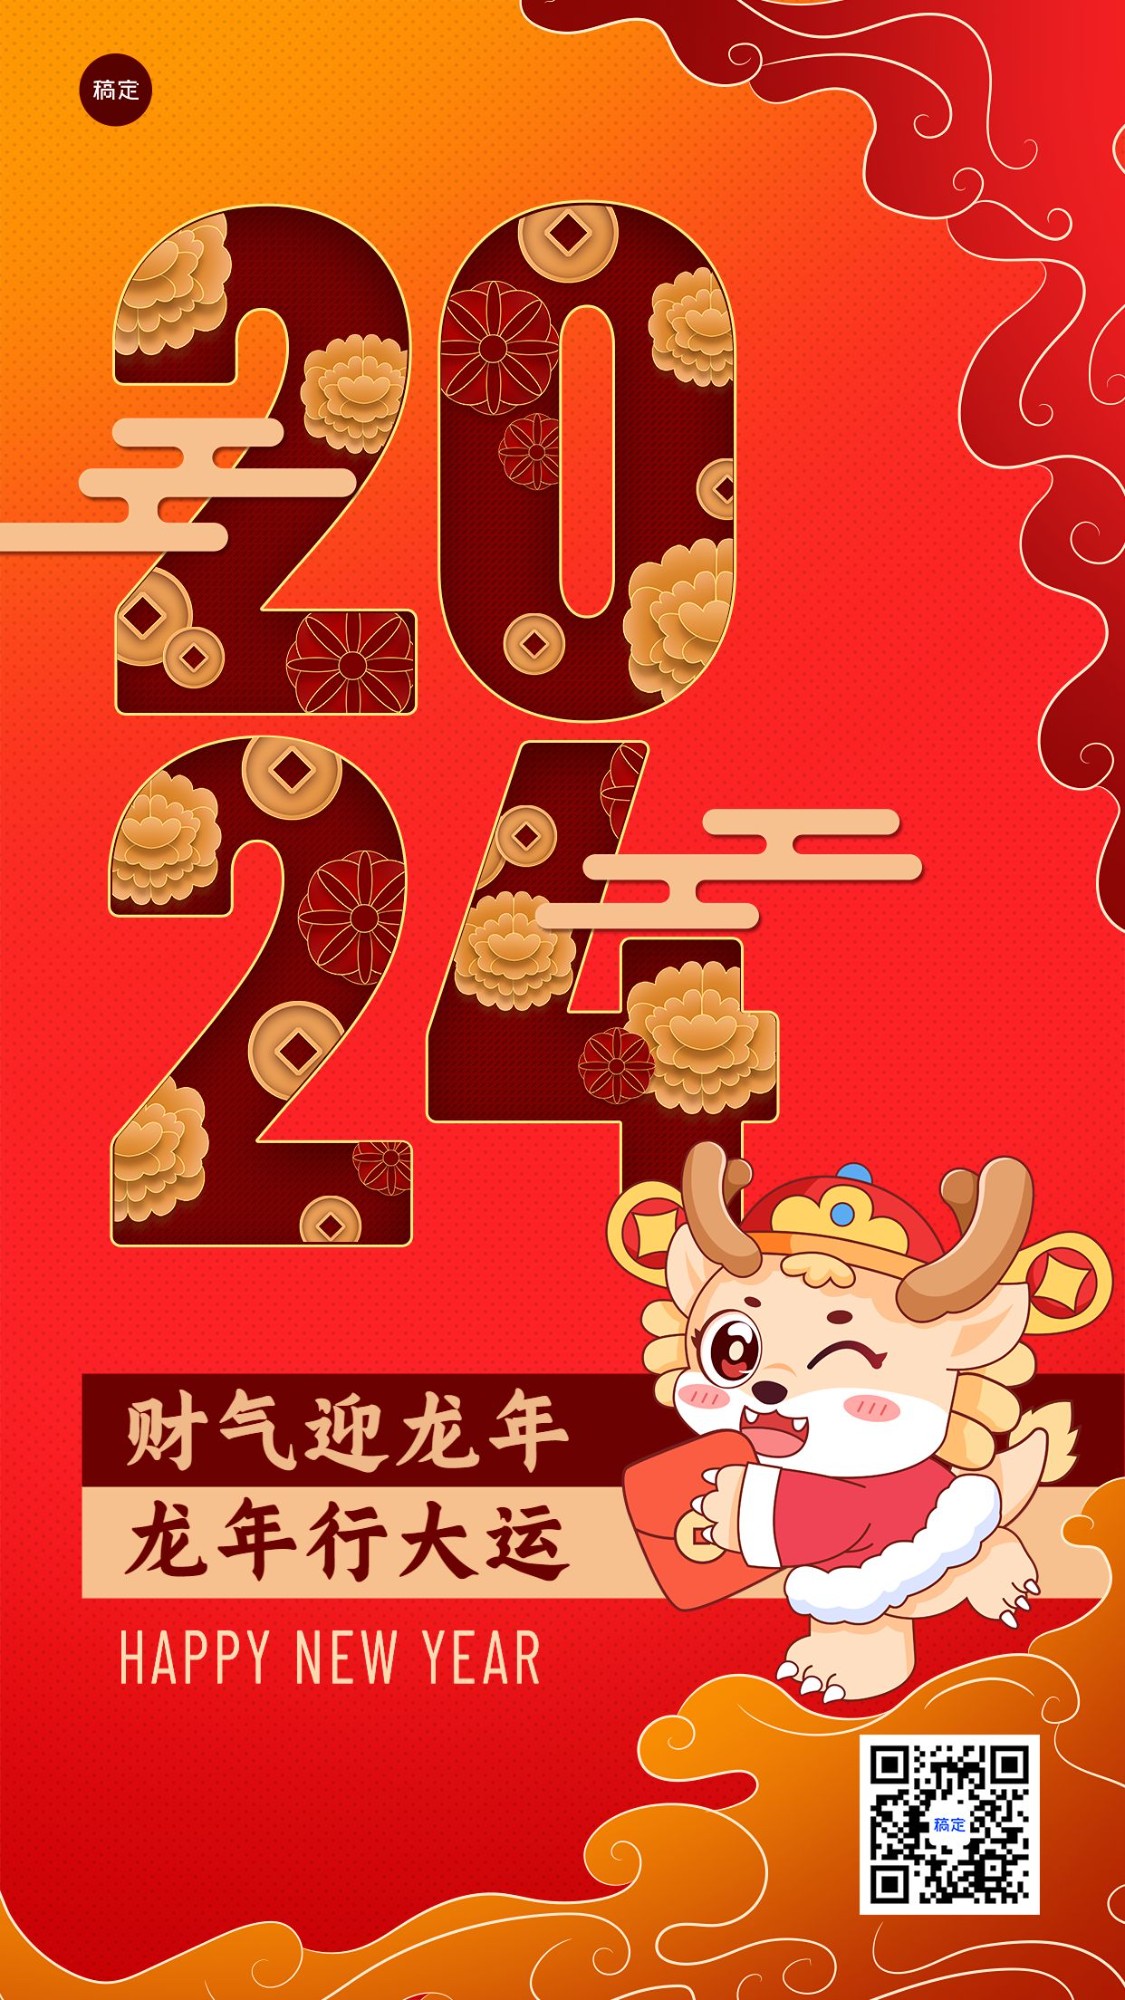 元旦金融保险新年节日祝福喜庆中国风手机海报预览效果